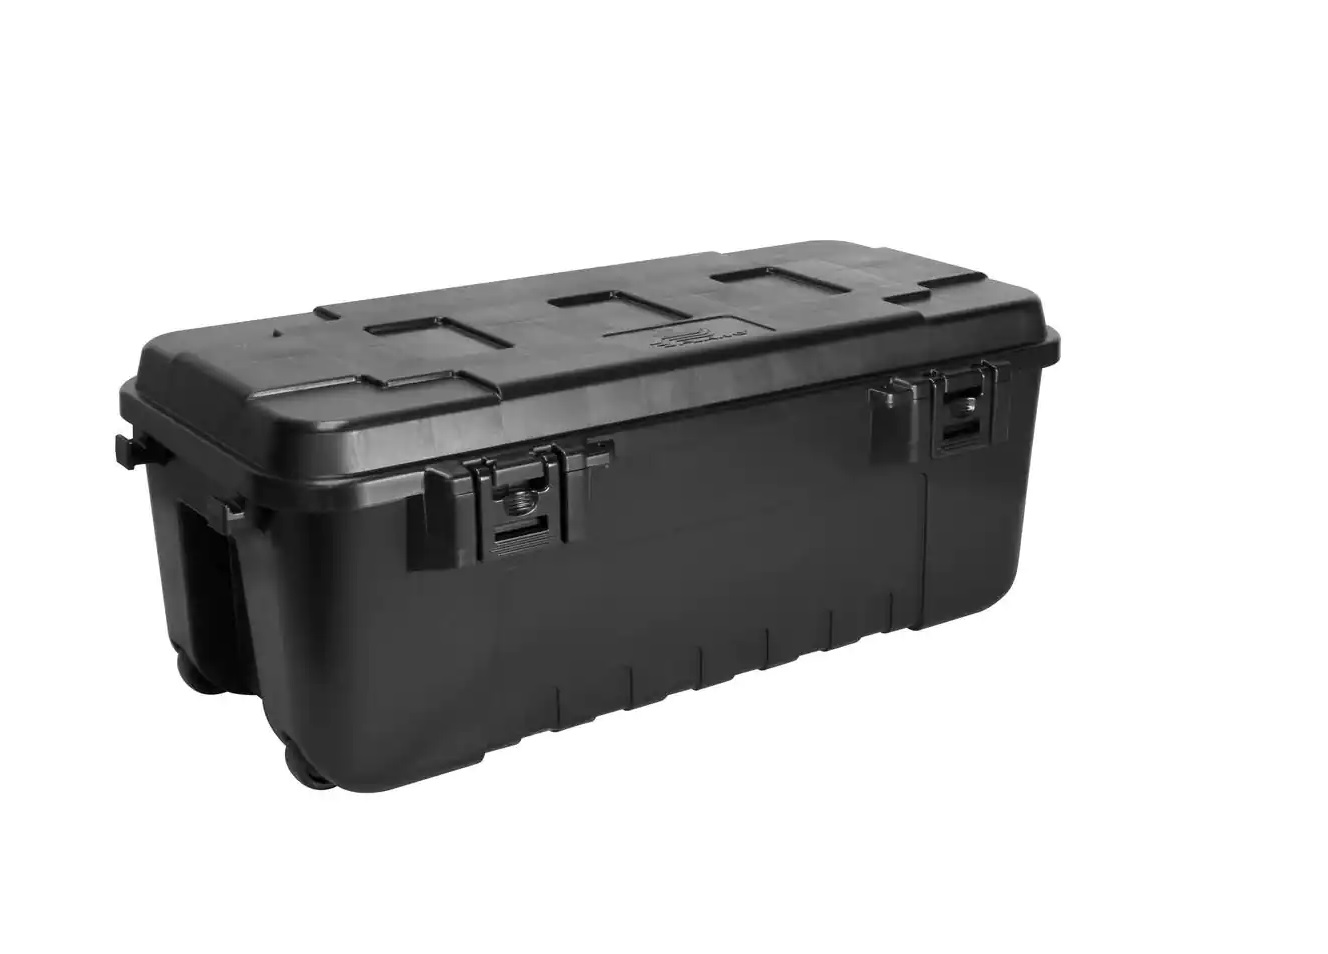 Prepravný Box Sportsman Trunk Black Wheels / Boxy, kufríky, vedrá / ostatné boxy